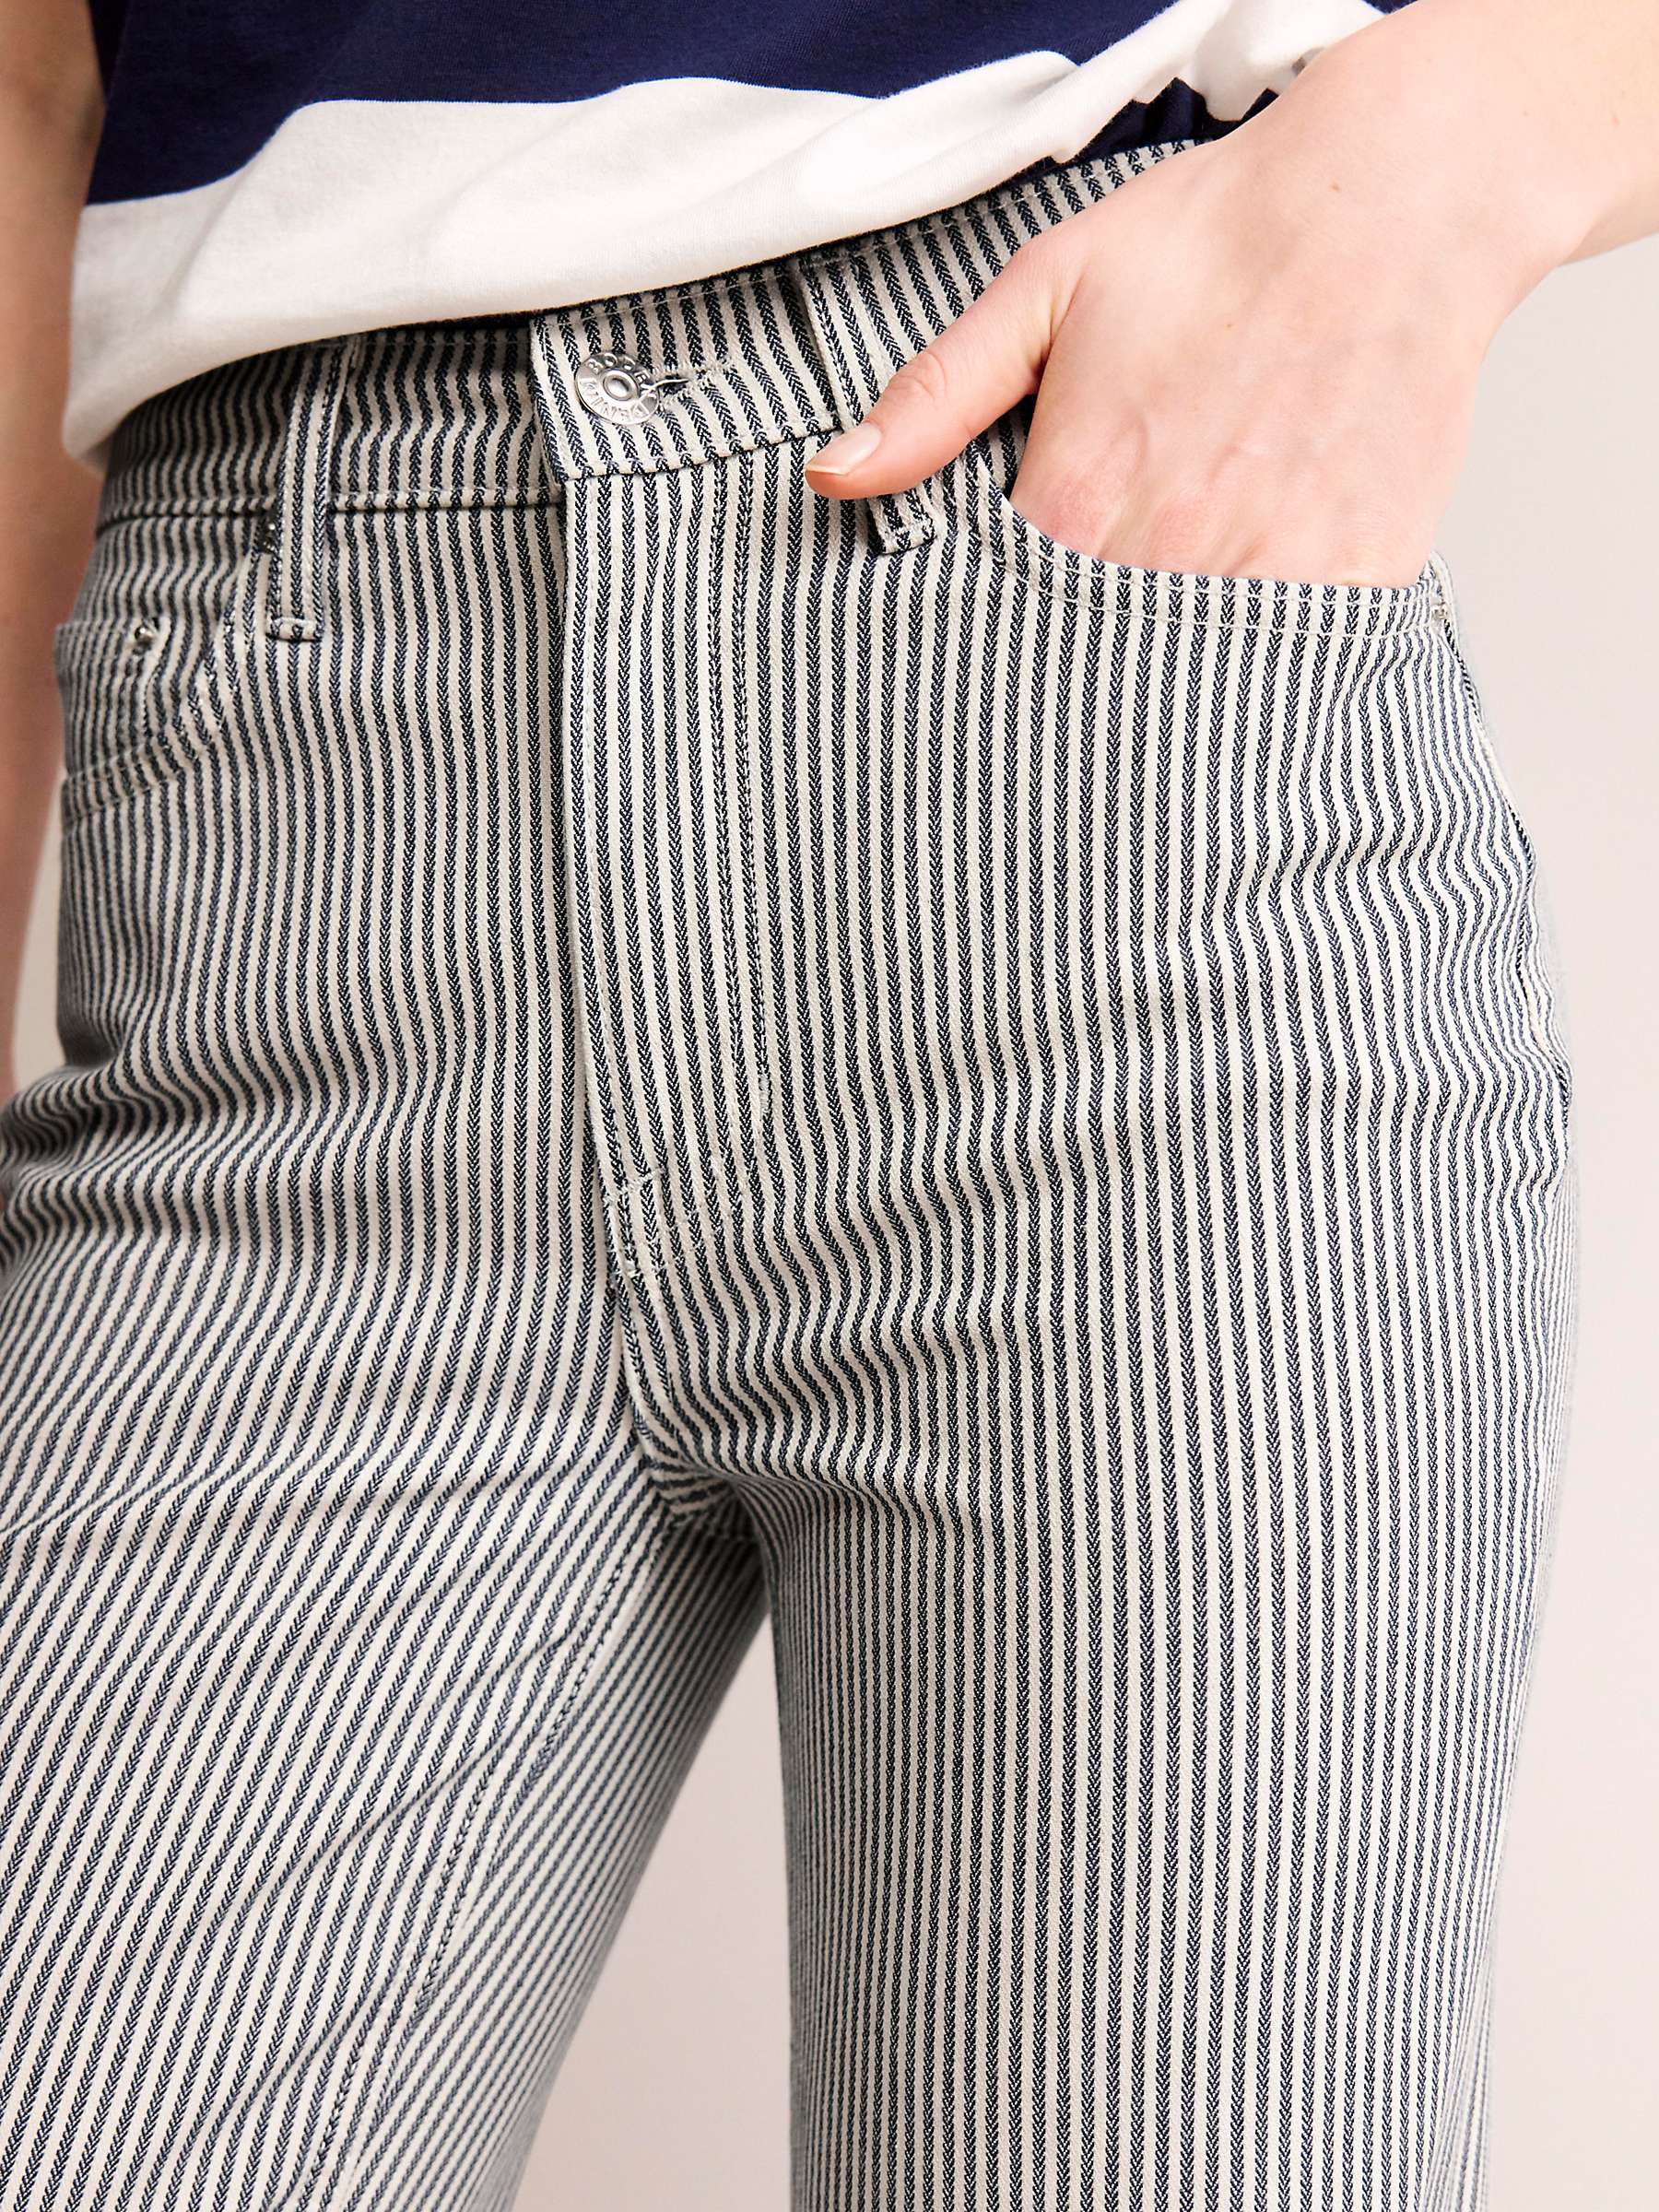 Buy Boden Mid Rise Slim Leg Stripe Jeans, White/Black Online at johnlewis.com